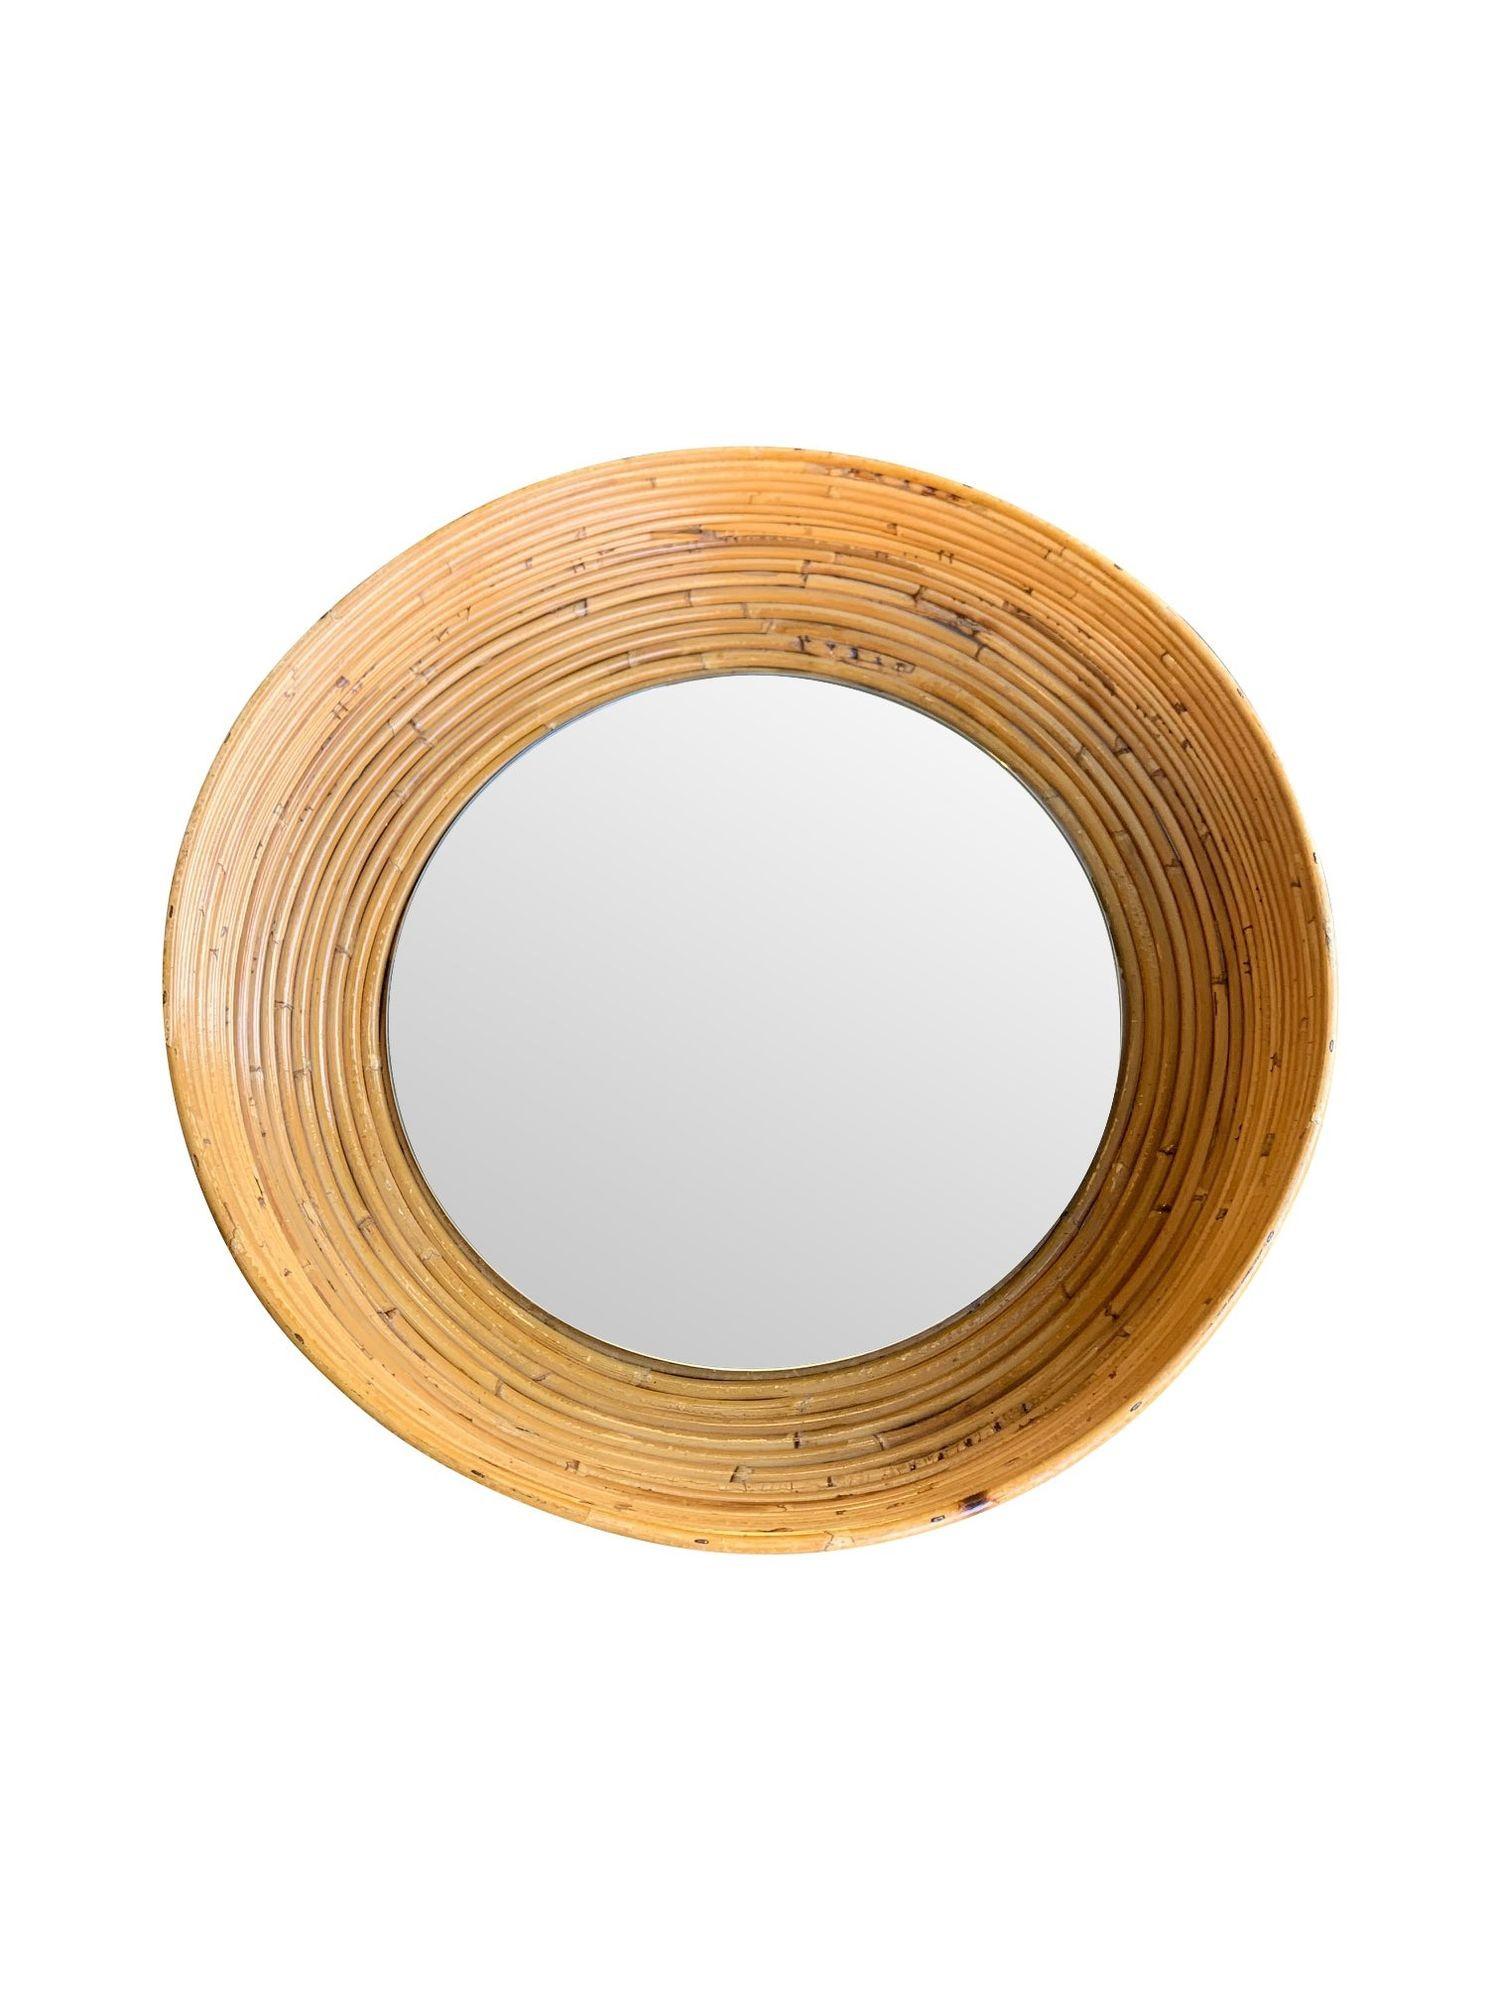 Ein italienischer runder Bambusspiegel aus Bleistiftschilf aus den 1970er Jahren mit einem dreidimensionalen, schalenförmigen Rahmen, bei dem die Spiegelplatte am Boden eingelassen ist.